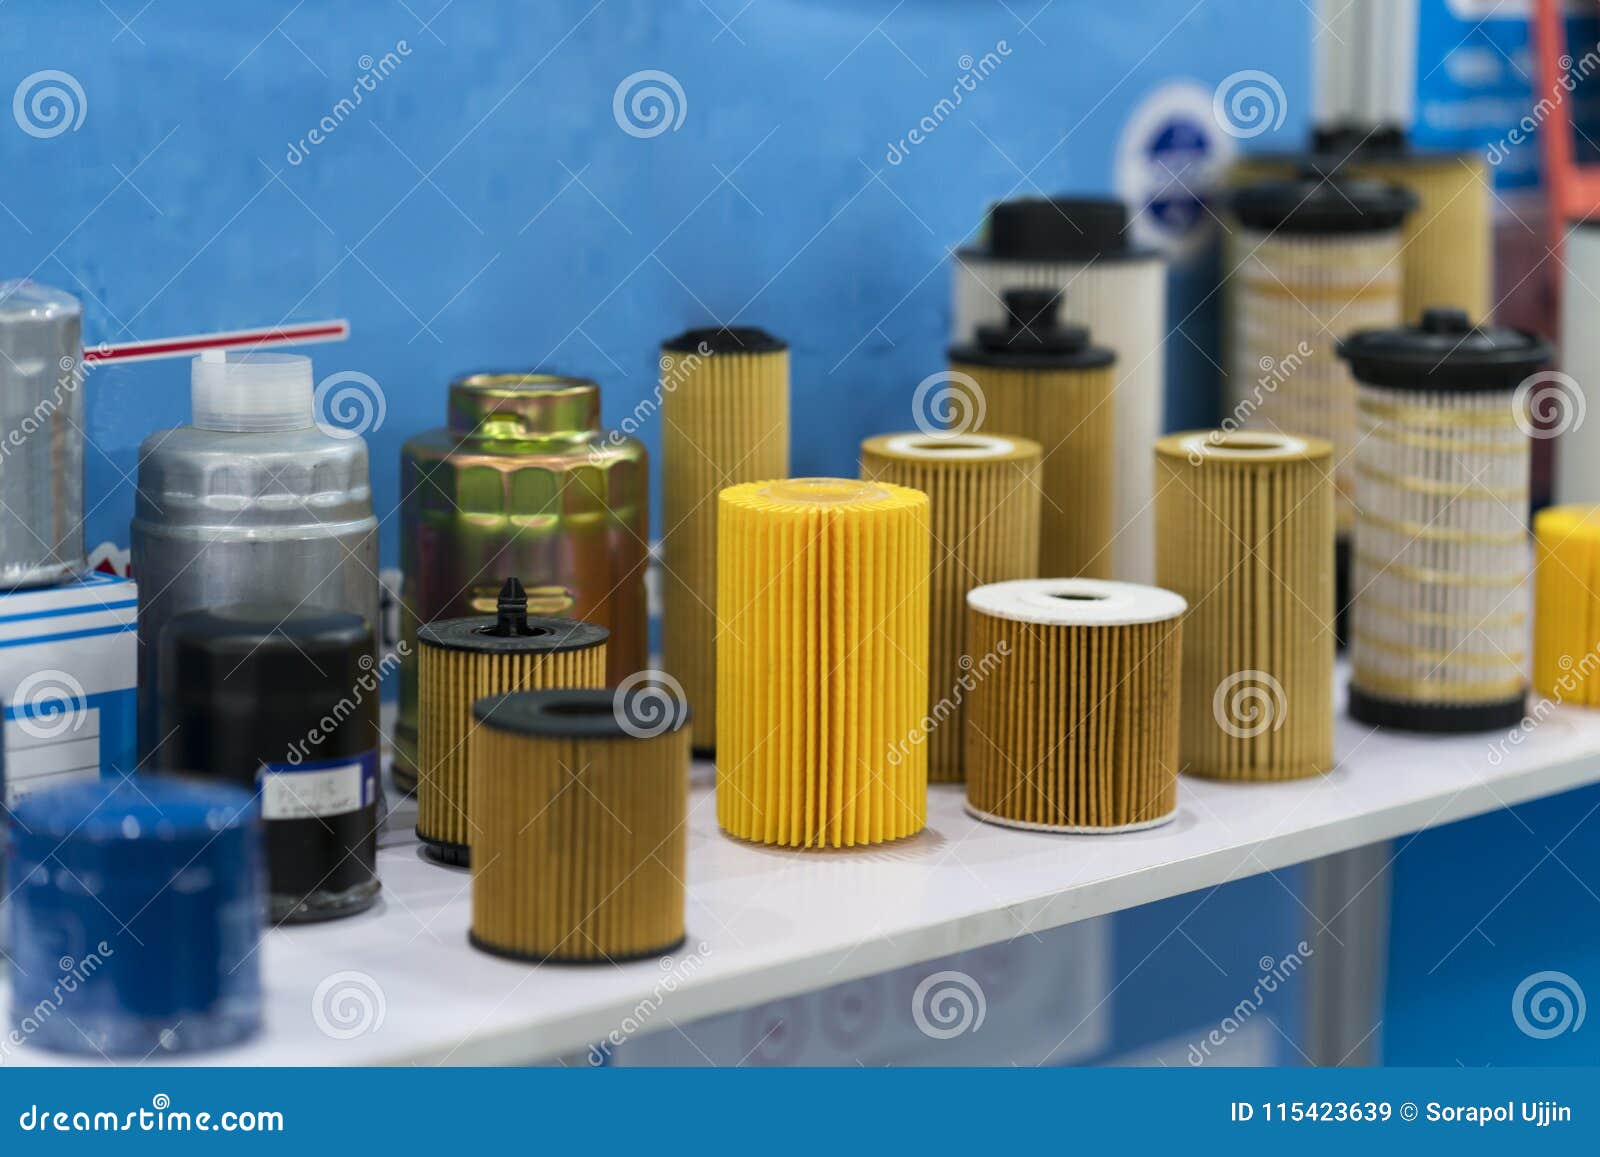 Фильтр топливный масляный воздушный. Масляные фильтры отработанные. Фильтры автомобильные. Утилизация фильтров. Емкость для отработанных фильтров масляных.